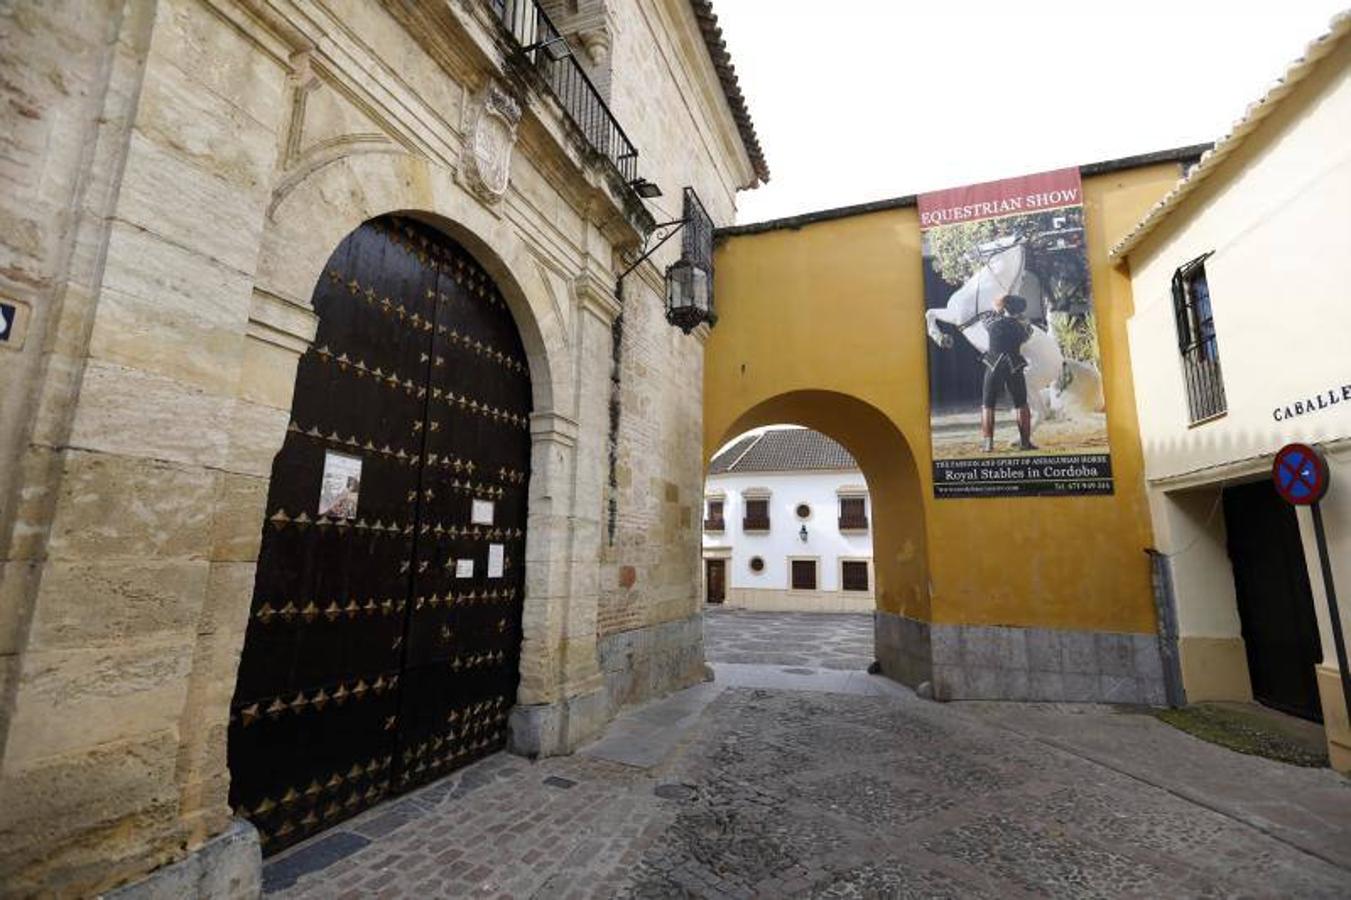 La soledad de los monumentos de Córdoba, en imágenes